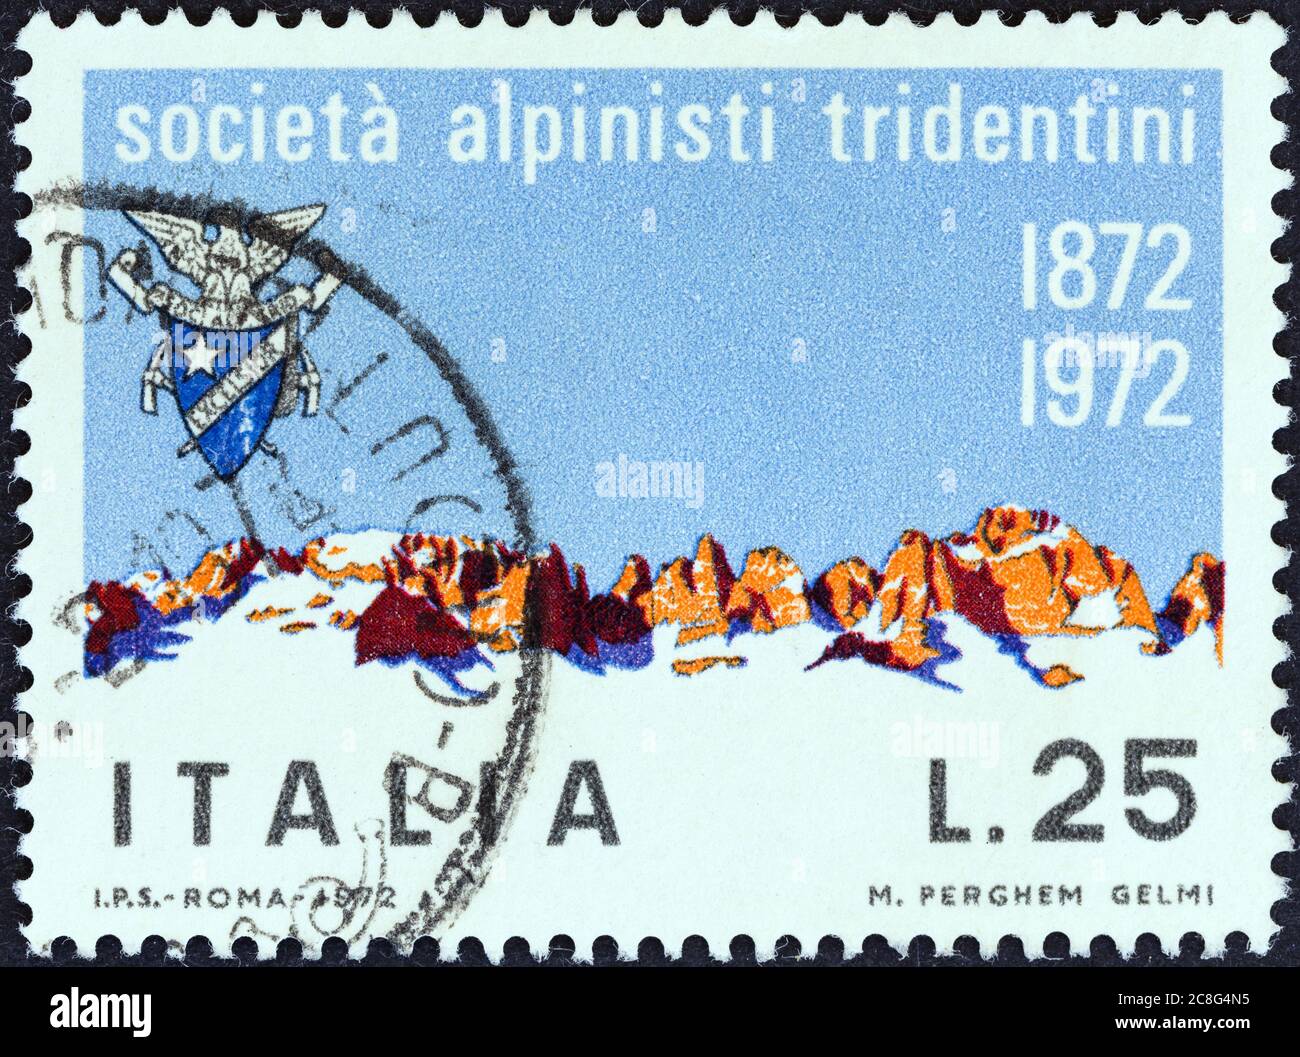 ITALIA - CIRCA 1972: Un francobollo stampato in Italia dal centenario della Società Alpinista Tridentina mostra i Monti Brenta, intorno al 1972. Foto Stock